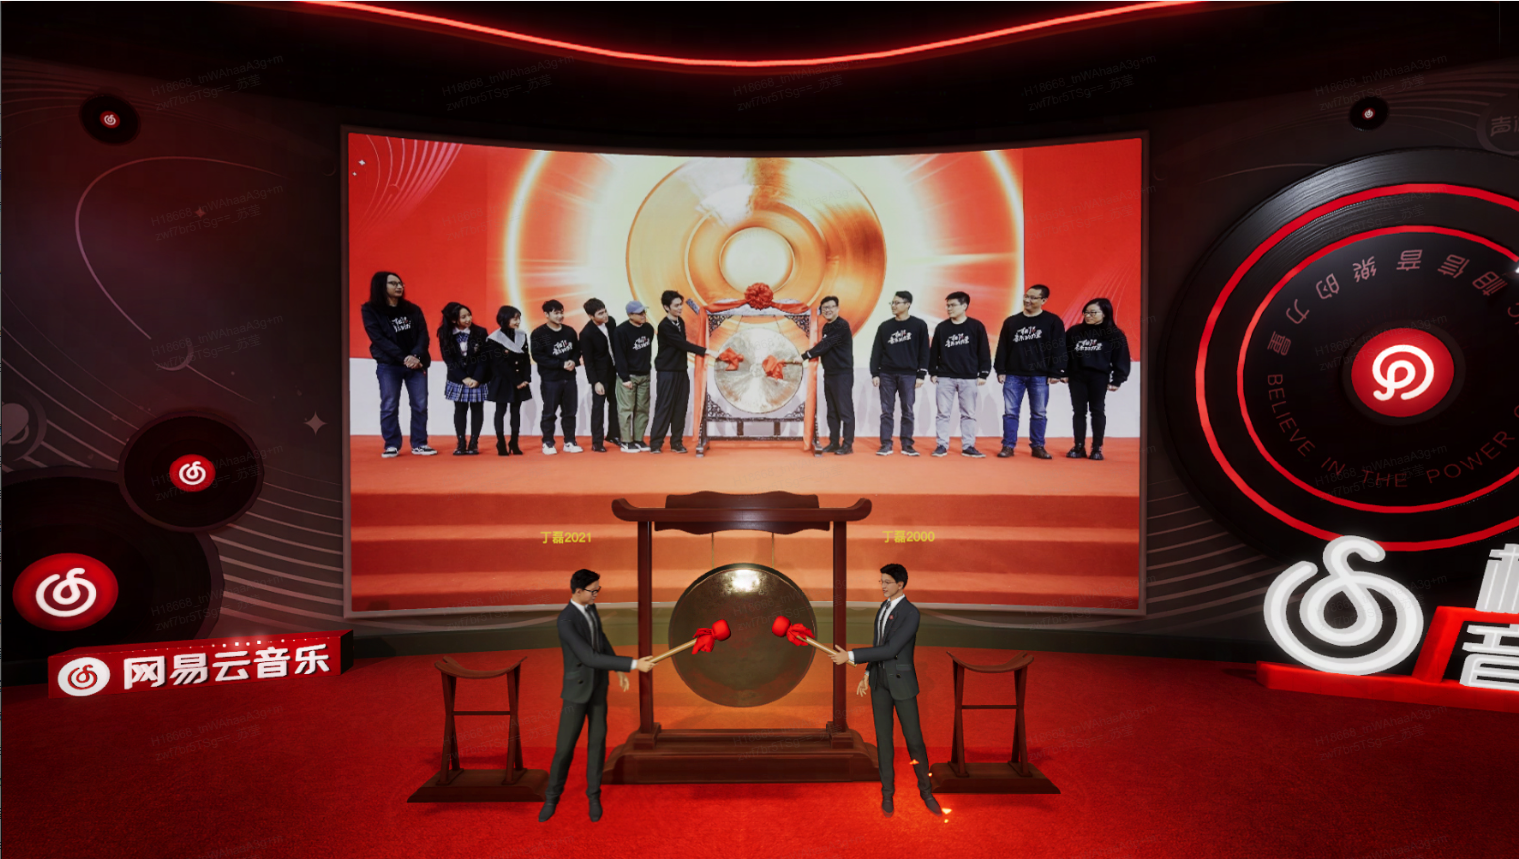 图片展示了两位男士站在大屏幕前，屏幕上播放着一群穿着休闲服装的人围绕一位中心人物的画面，周围是红色和黑色的现代装饰。